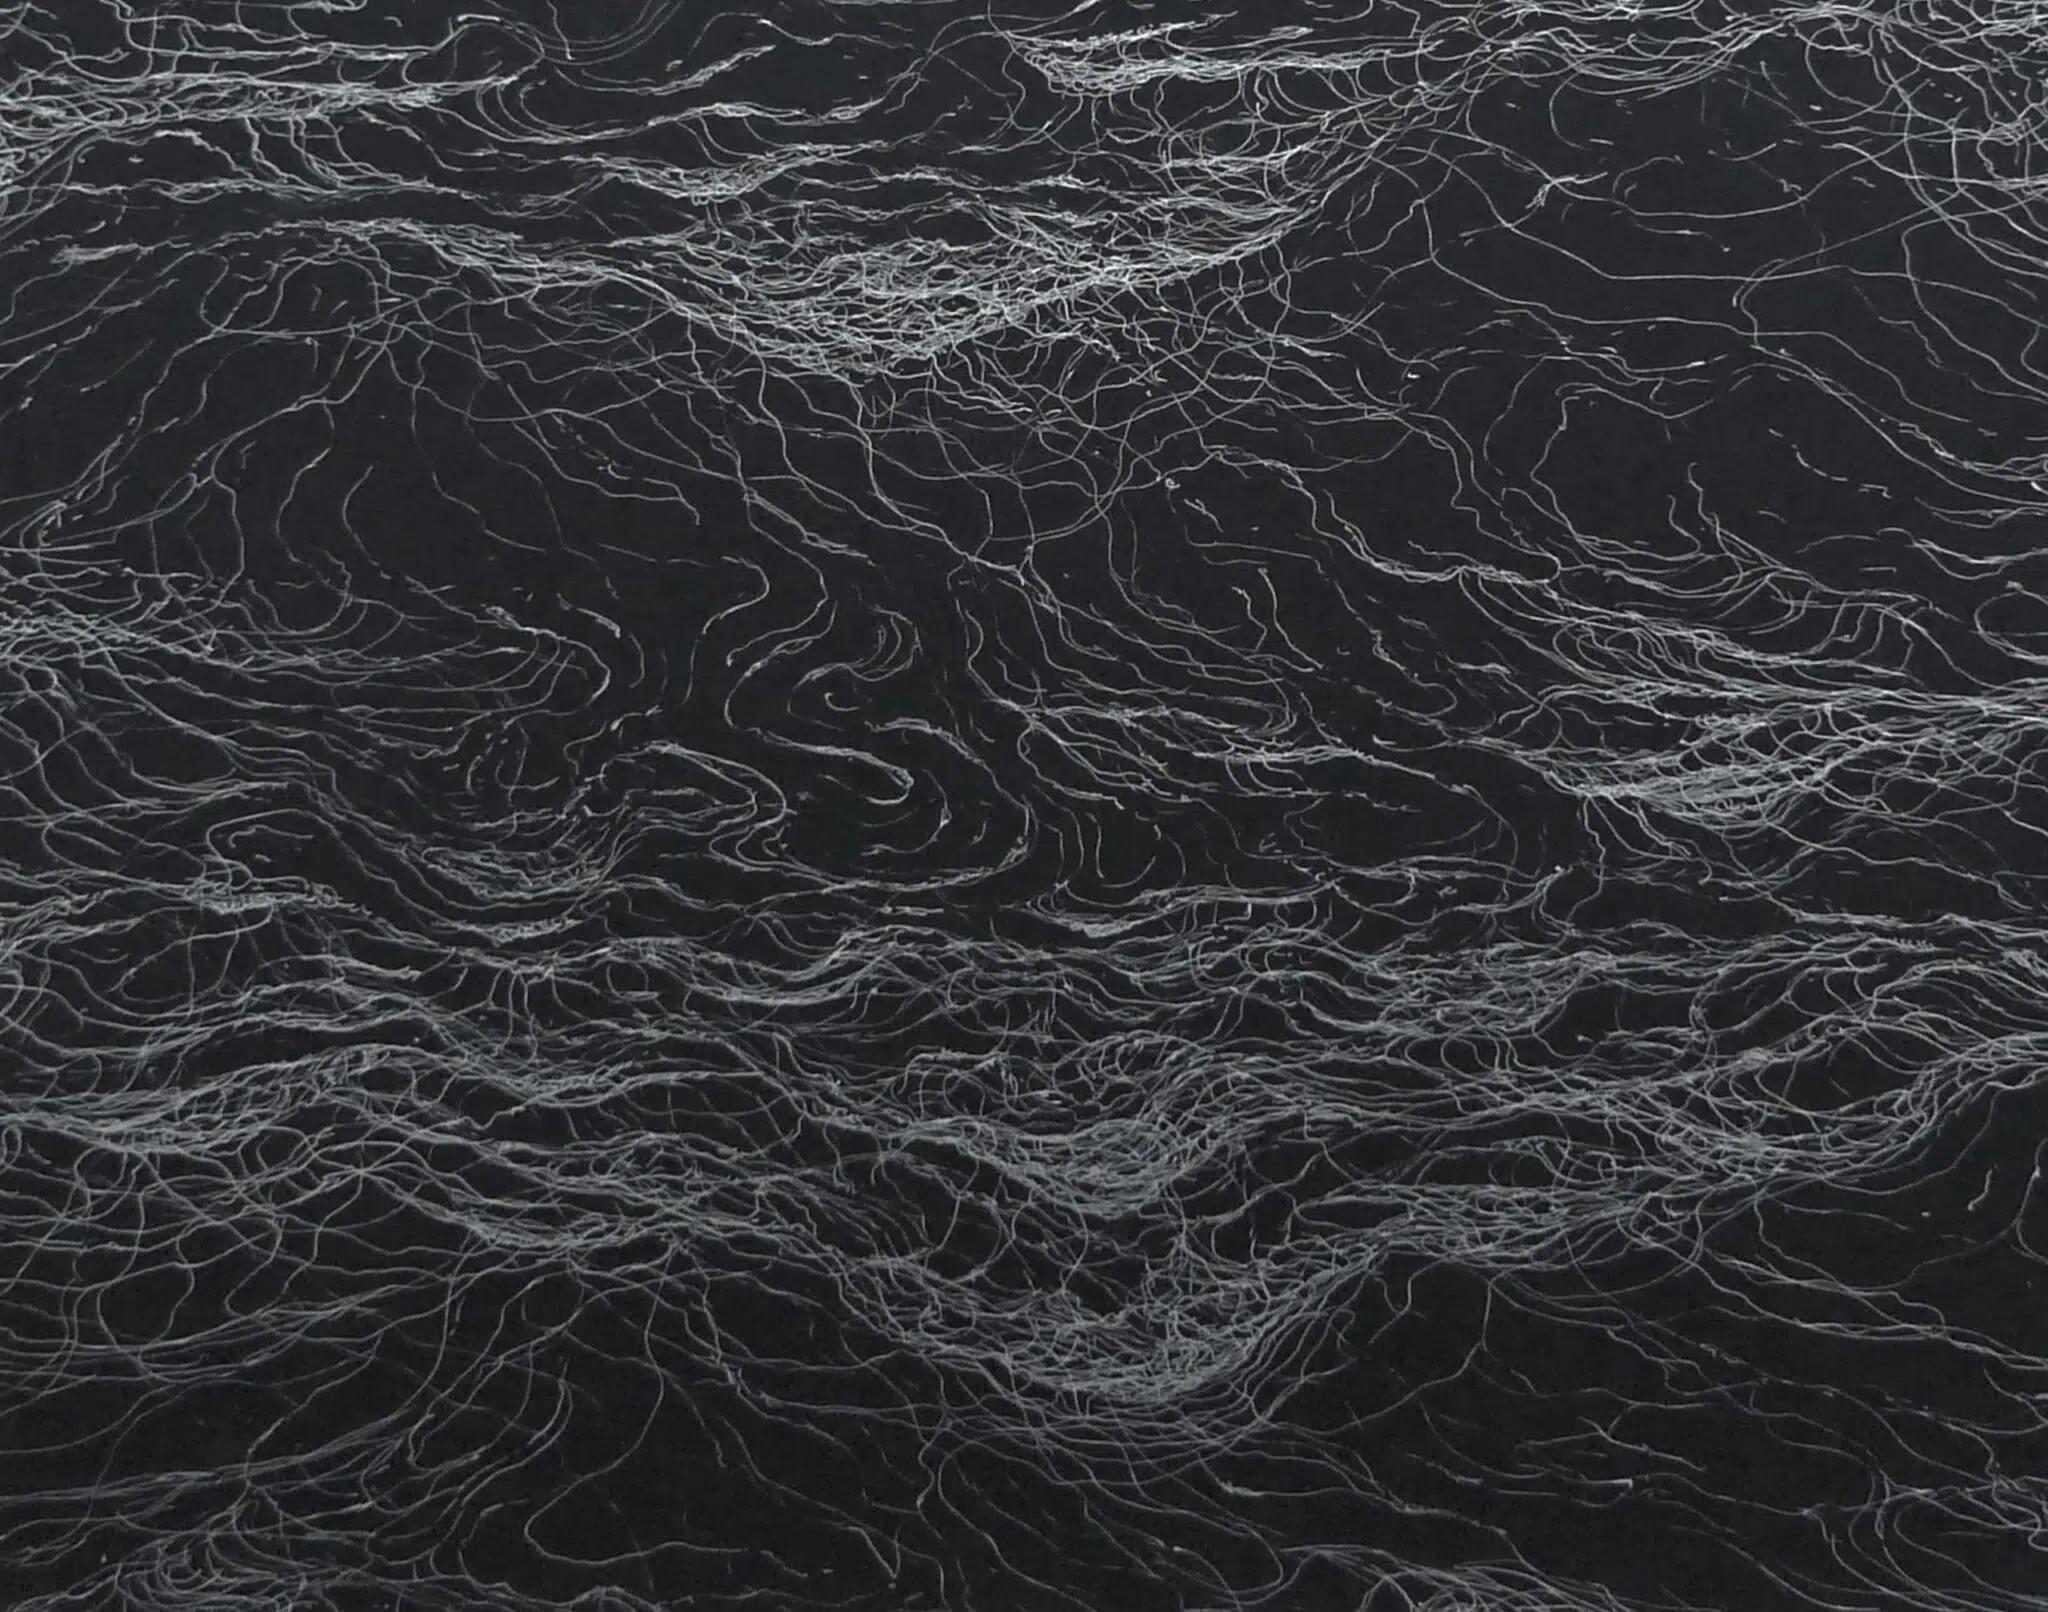 Infinity by Franco Salas Borquez - Seascape, ocean, waves, black, silver ink 2